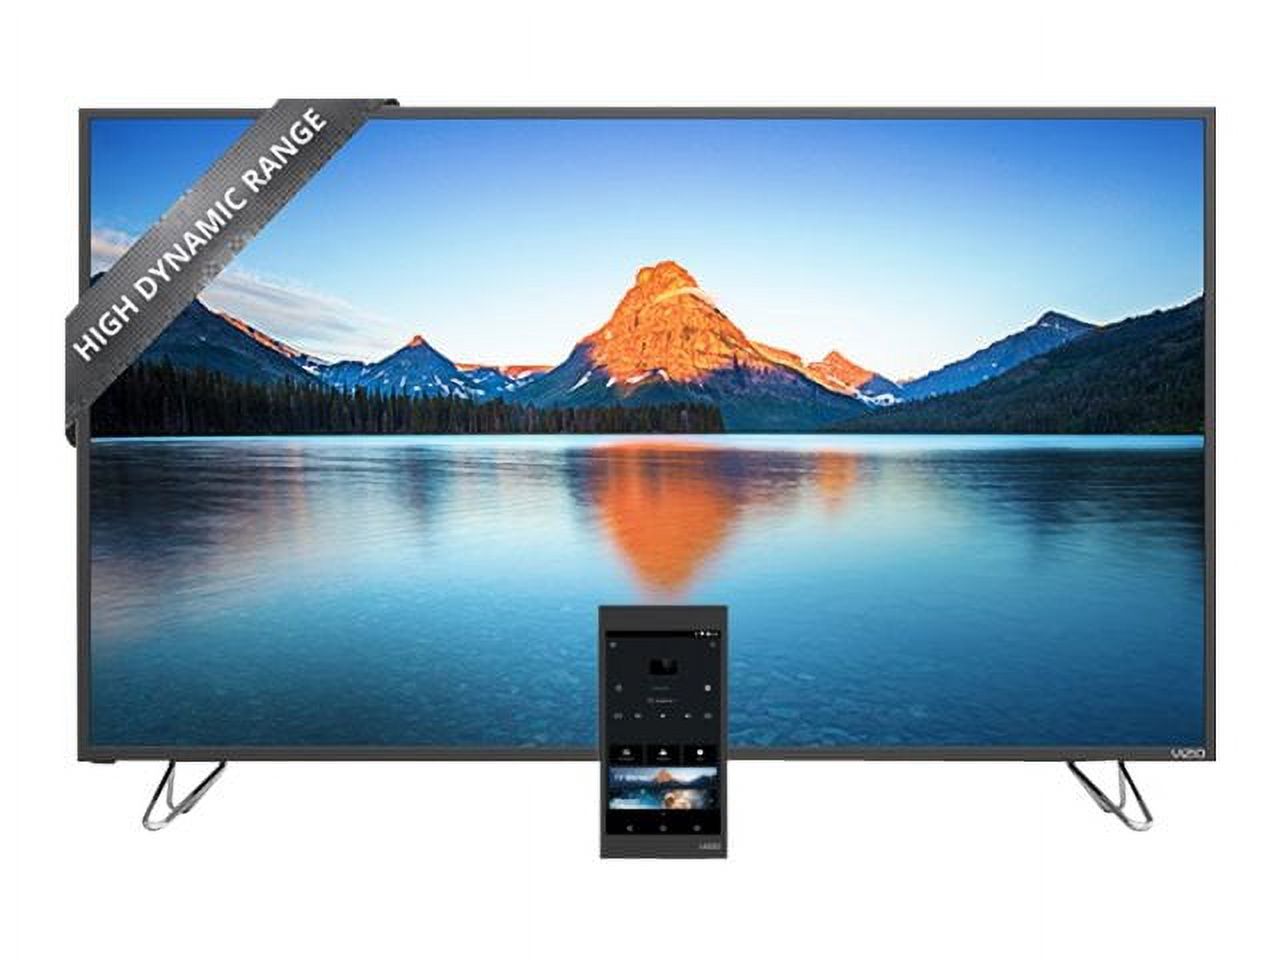 VIZIO 60" Class 4K UHDTV (2160p) Smart LED-LCD TV (M60-D1) - image 1 of 14